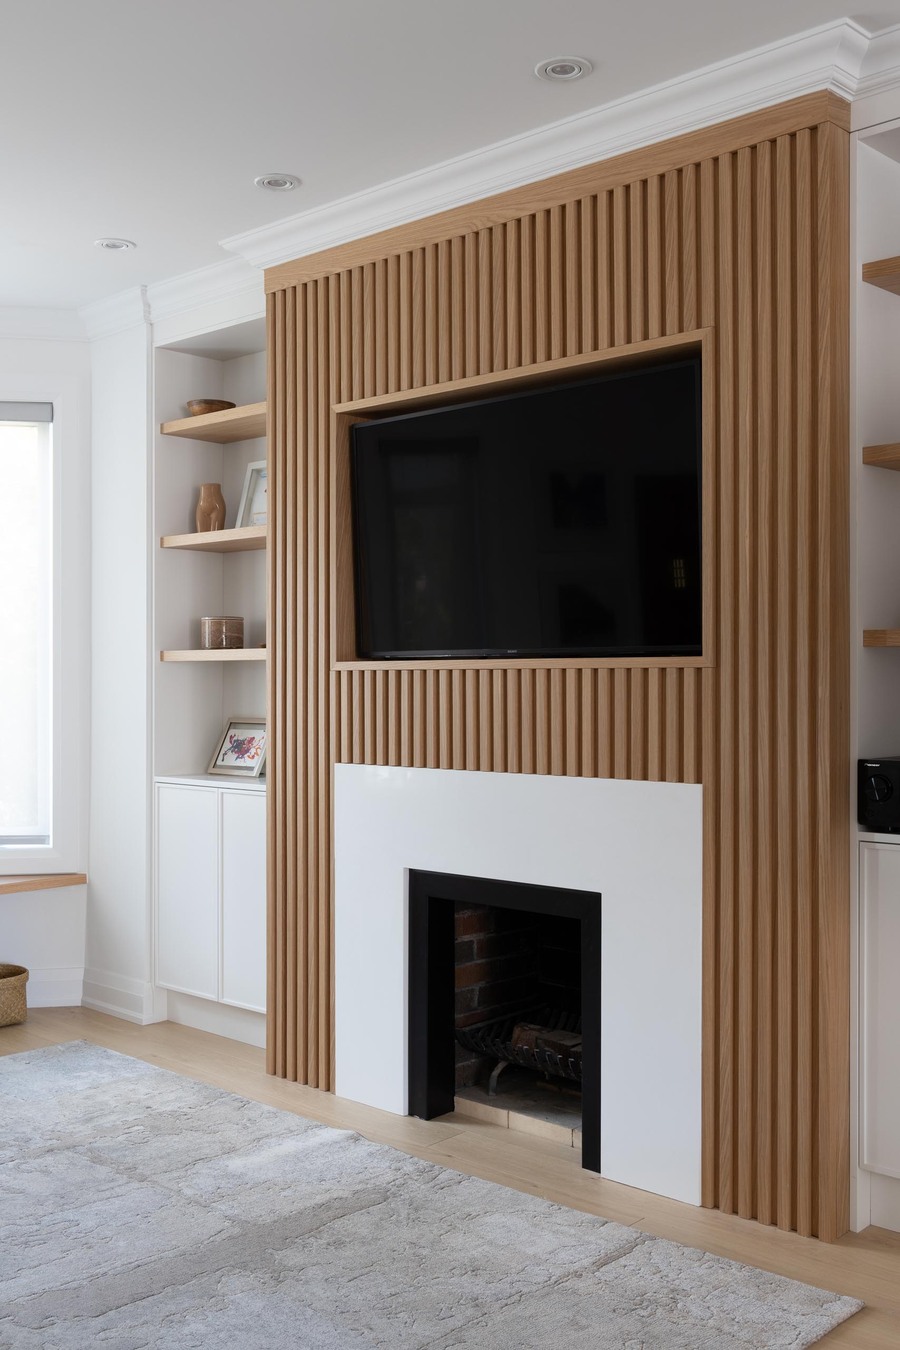 Muro de una sala de estar con libreros empotrados y chimenea. Sobre esta hay un televisor y ambos forman parte de un revestimiento con listones de madera.